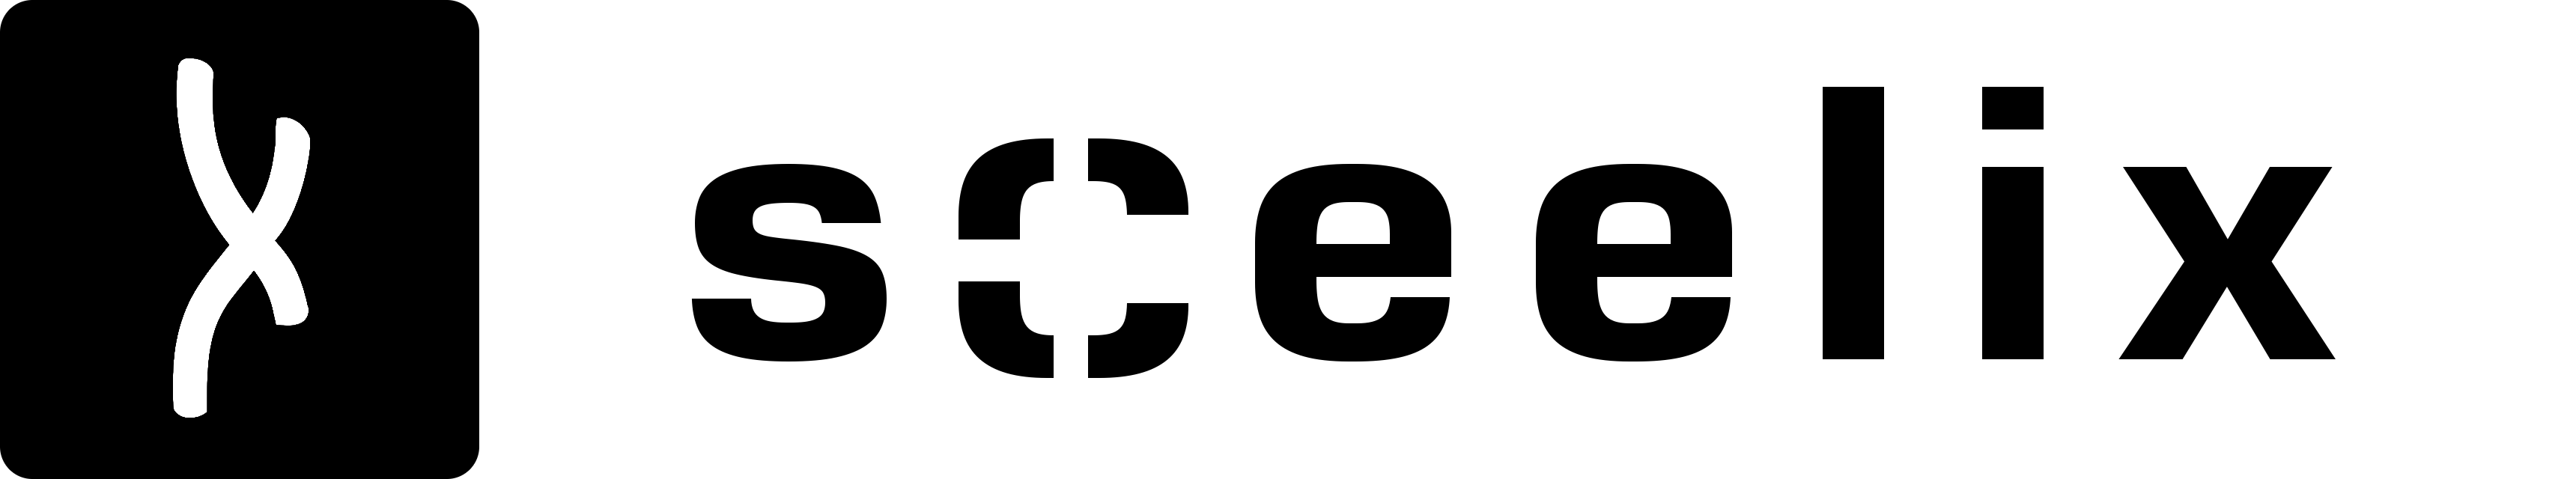 inRes 2015 sCeelix logo